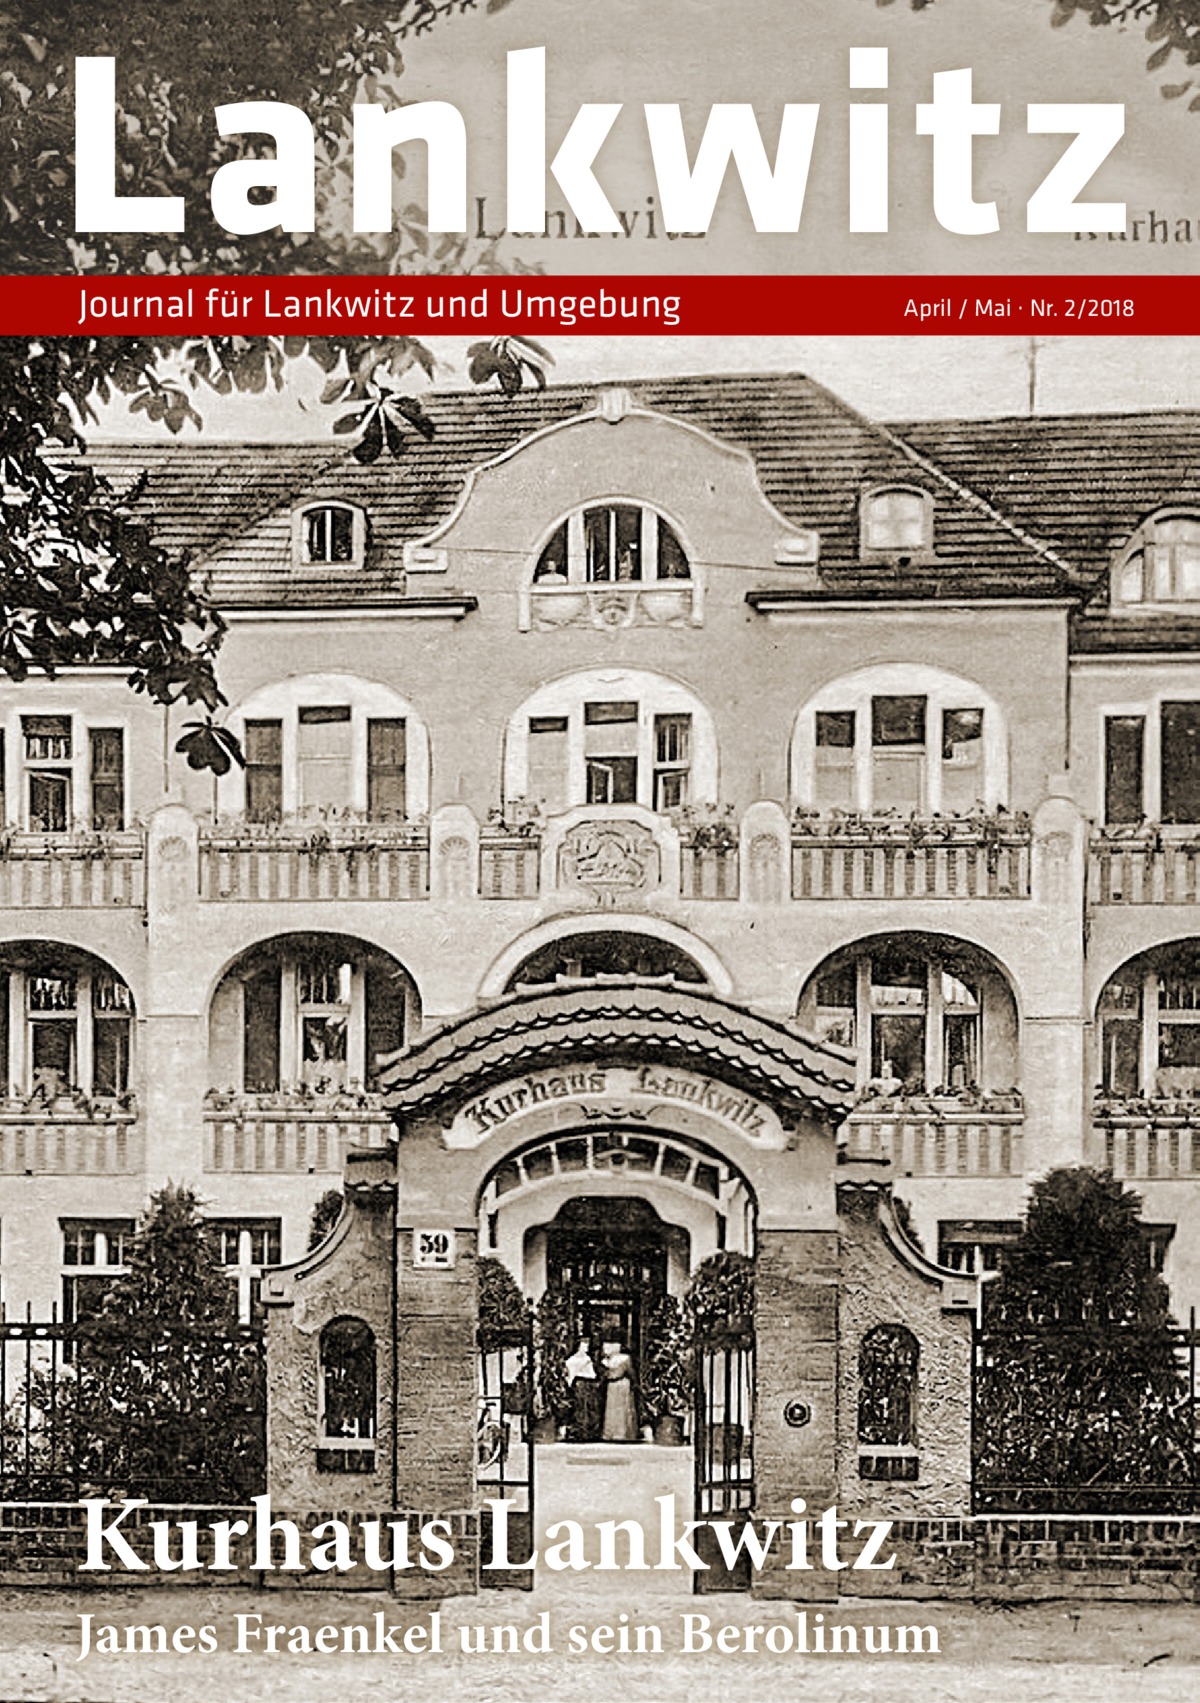 Lankwitz Journal für Lankwitz und Umgebung  Kurhaus Lankwitz  April / Mai · Nr. 2/2018  James Fraenkel und sein Berolinum